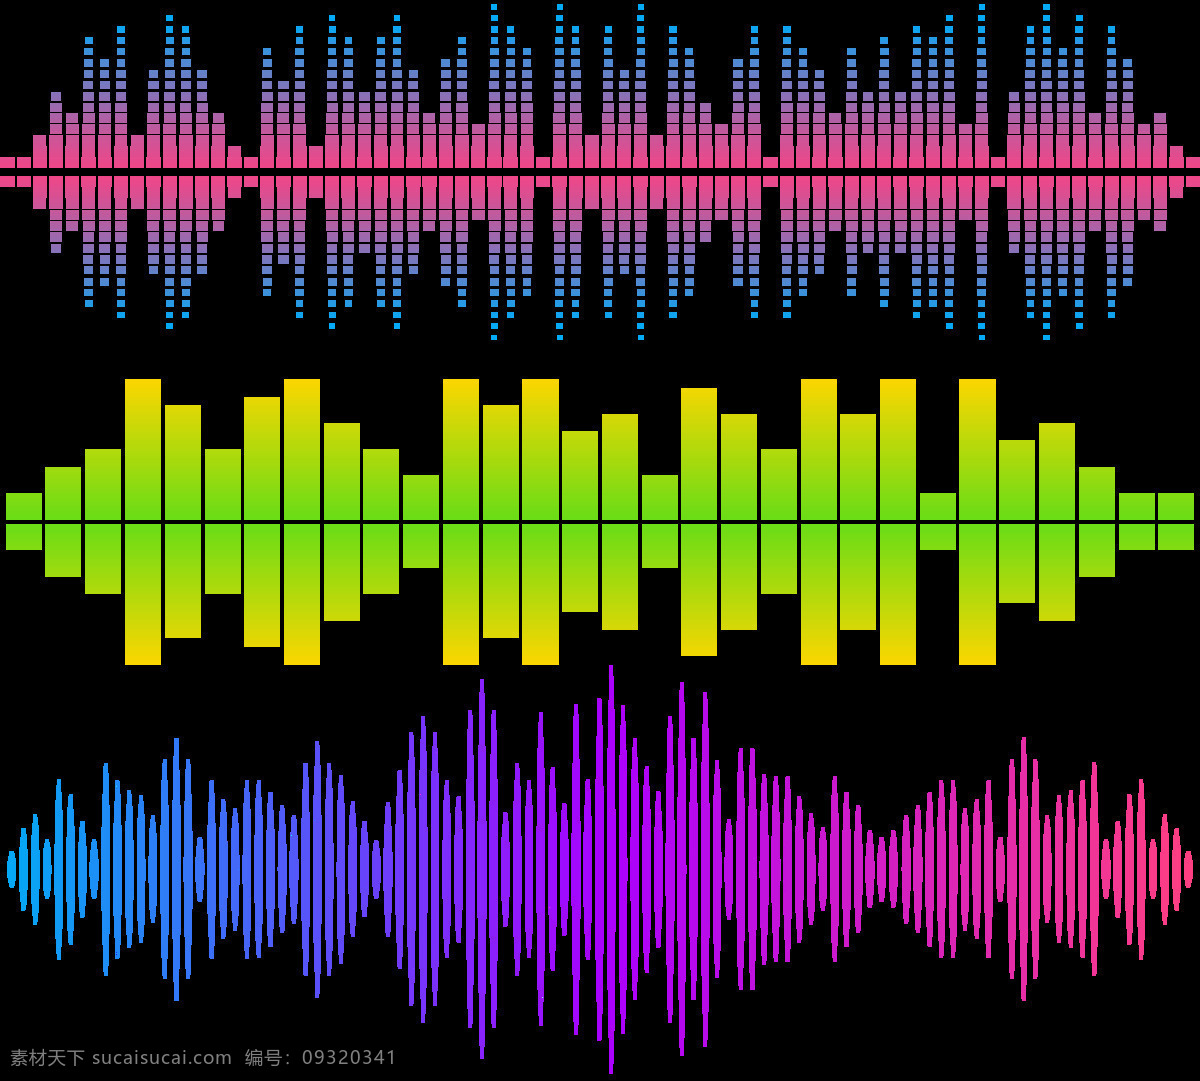 彩色 声波 图案 免 抠 透明 图 层 音乐声波 声音波 均衡器 曲线 音量 显示 背景 音乐素材 线条 声波图形 声音波形 声波素材 音波线条 素材声音 音乐符号